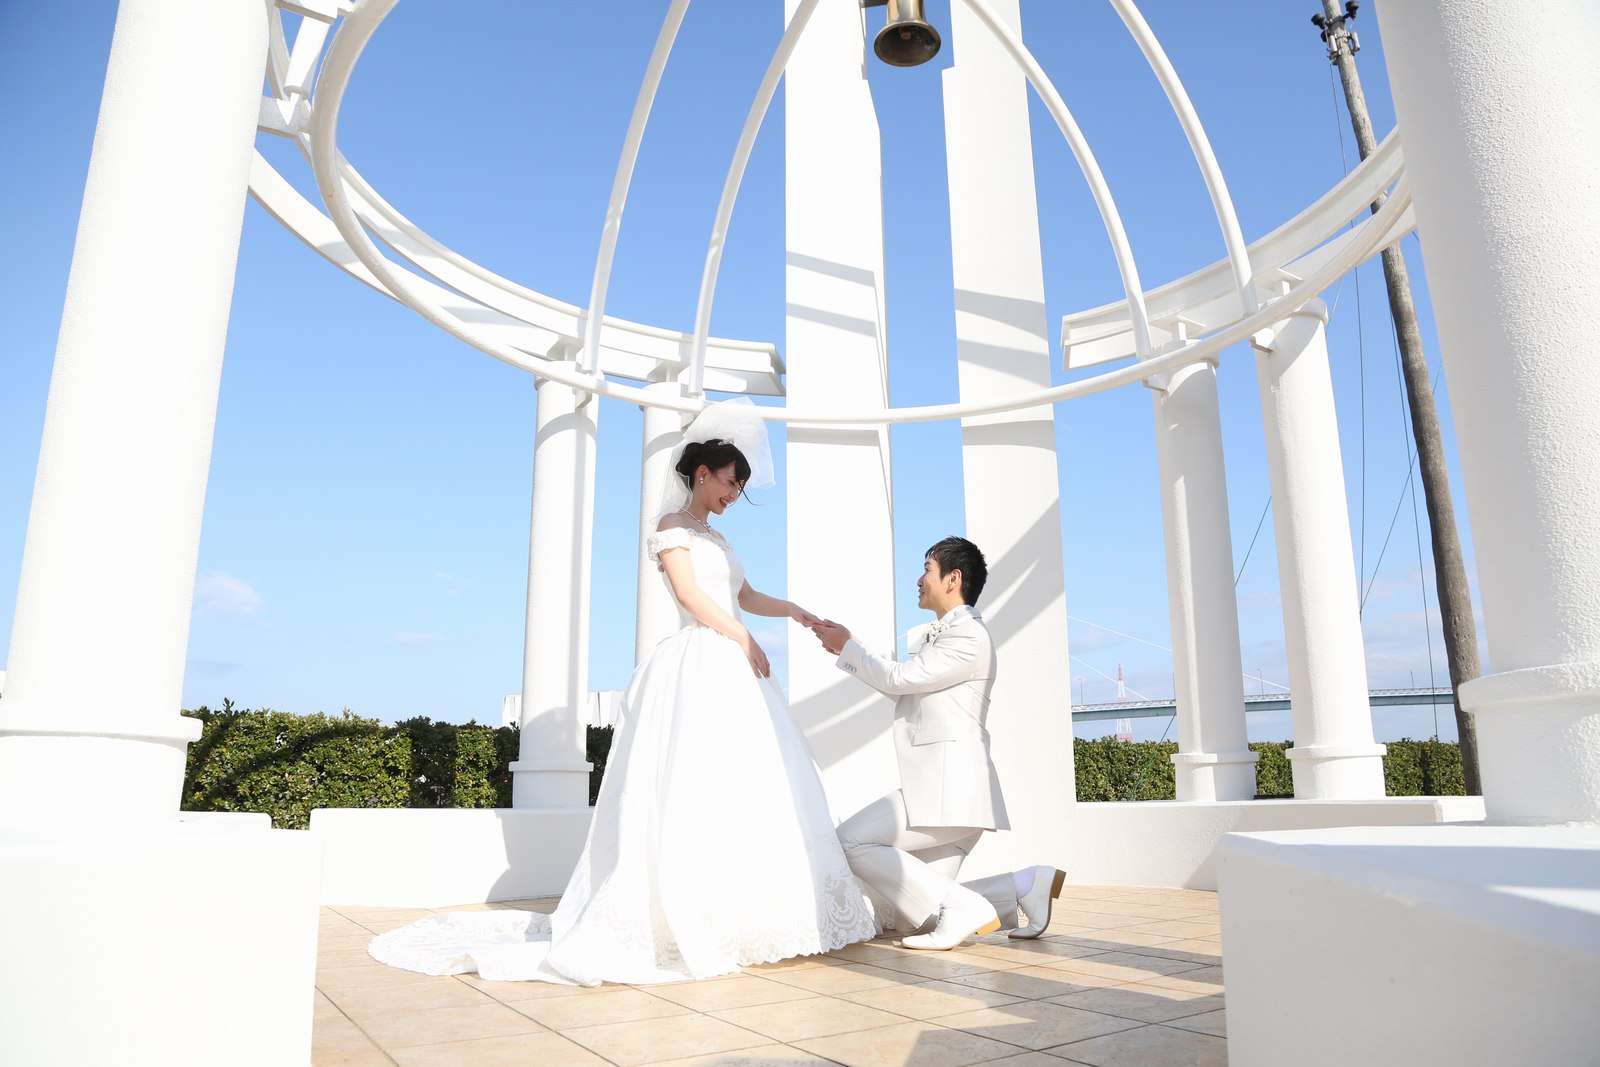 徳島市の結婚式場ブランアンジュのガゼボで記念写真を撮影している新郎新婦